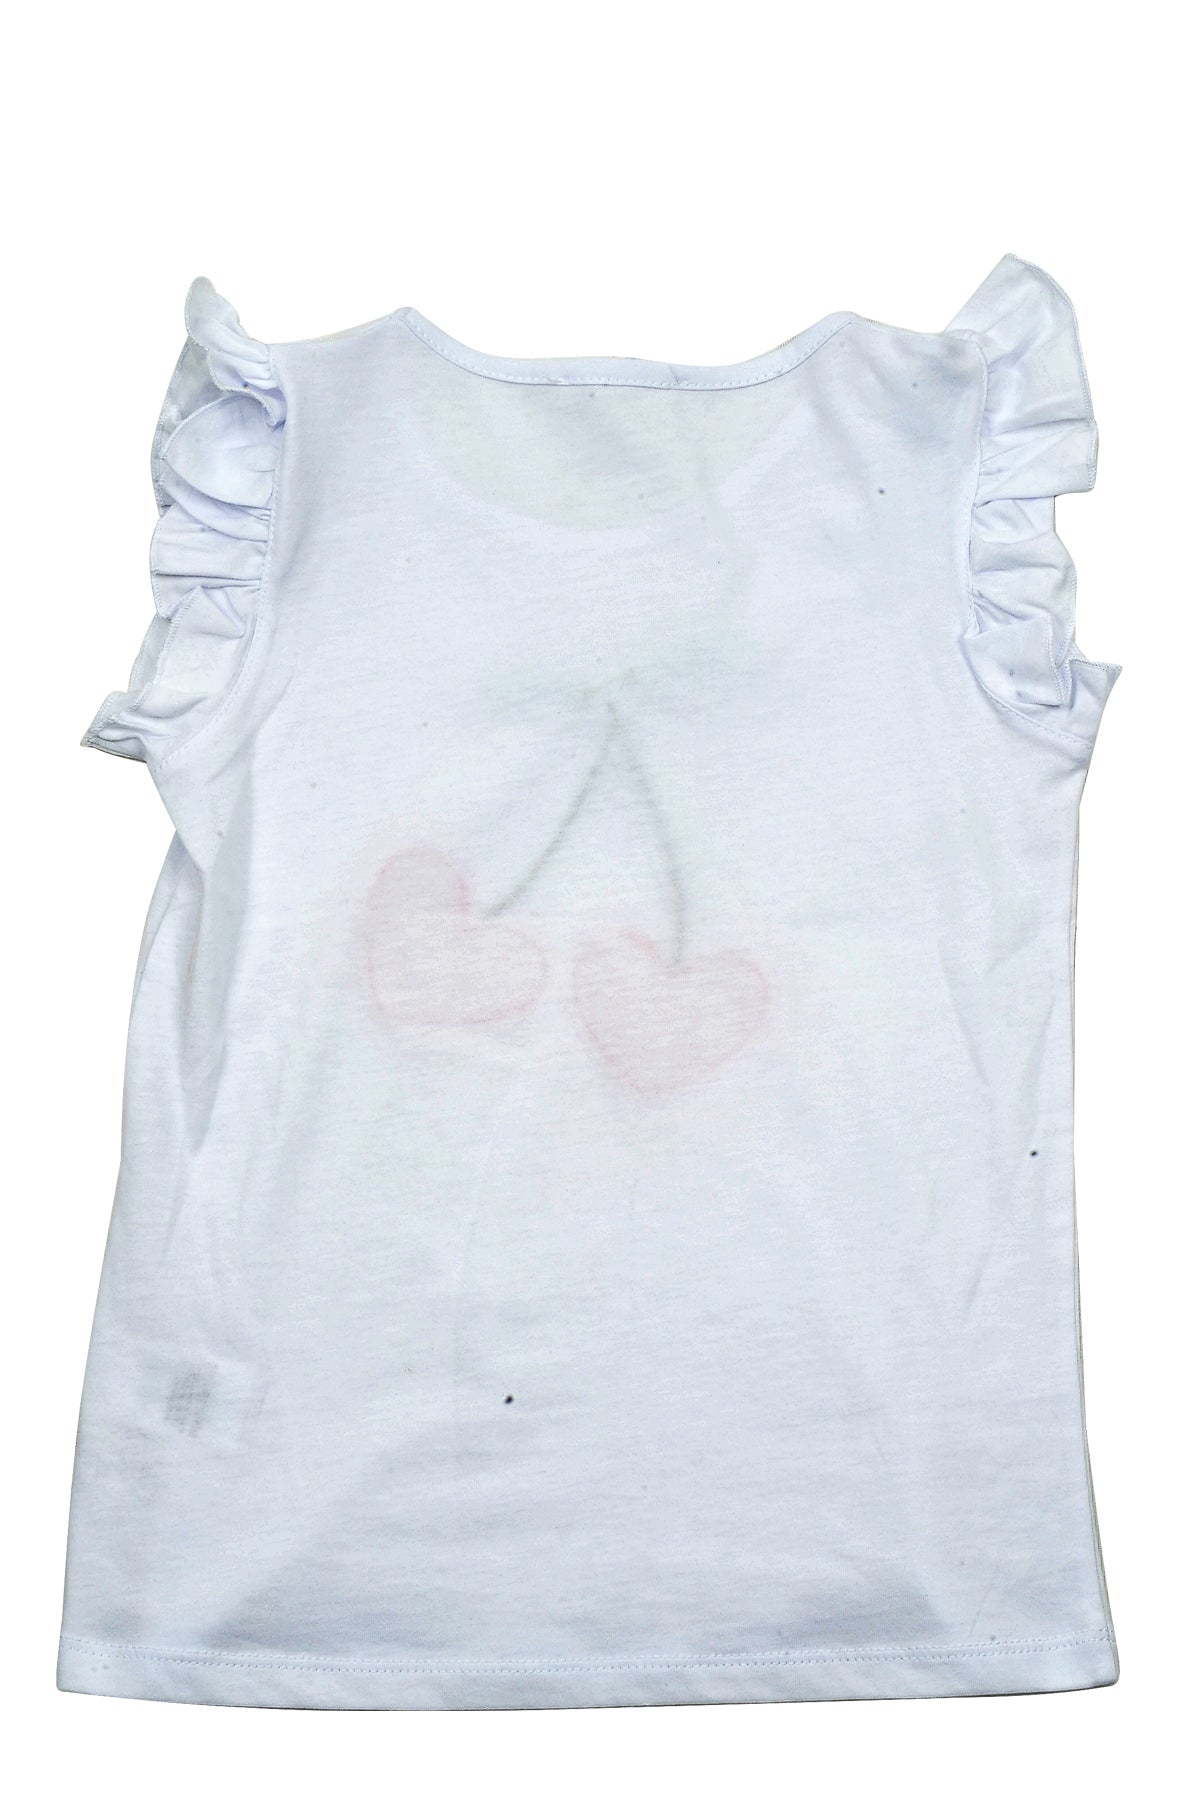 Kız Çocuk Beyaz Cherry Aplikeli T-Shirt (5-14yaş)-2